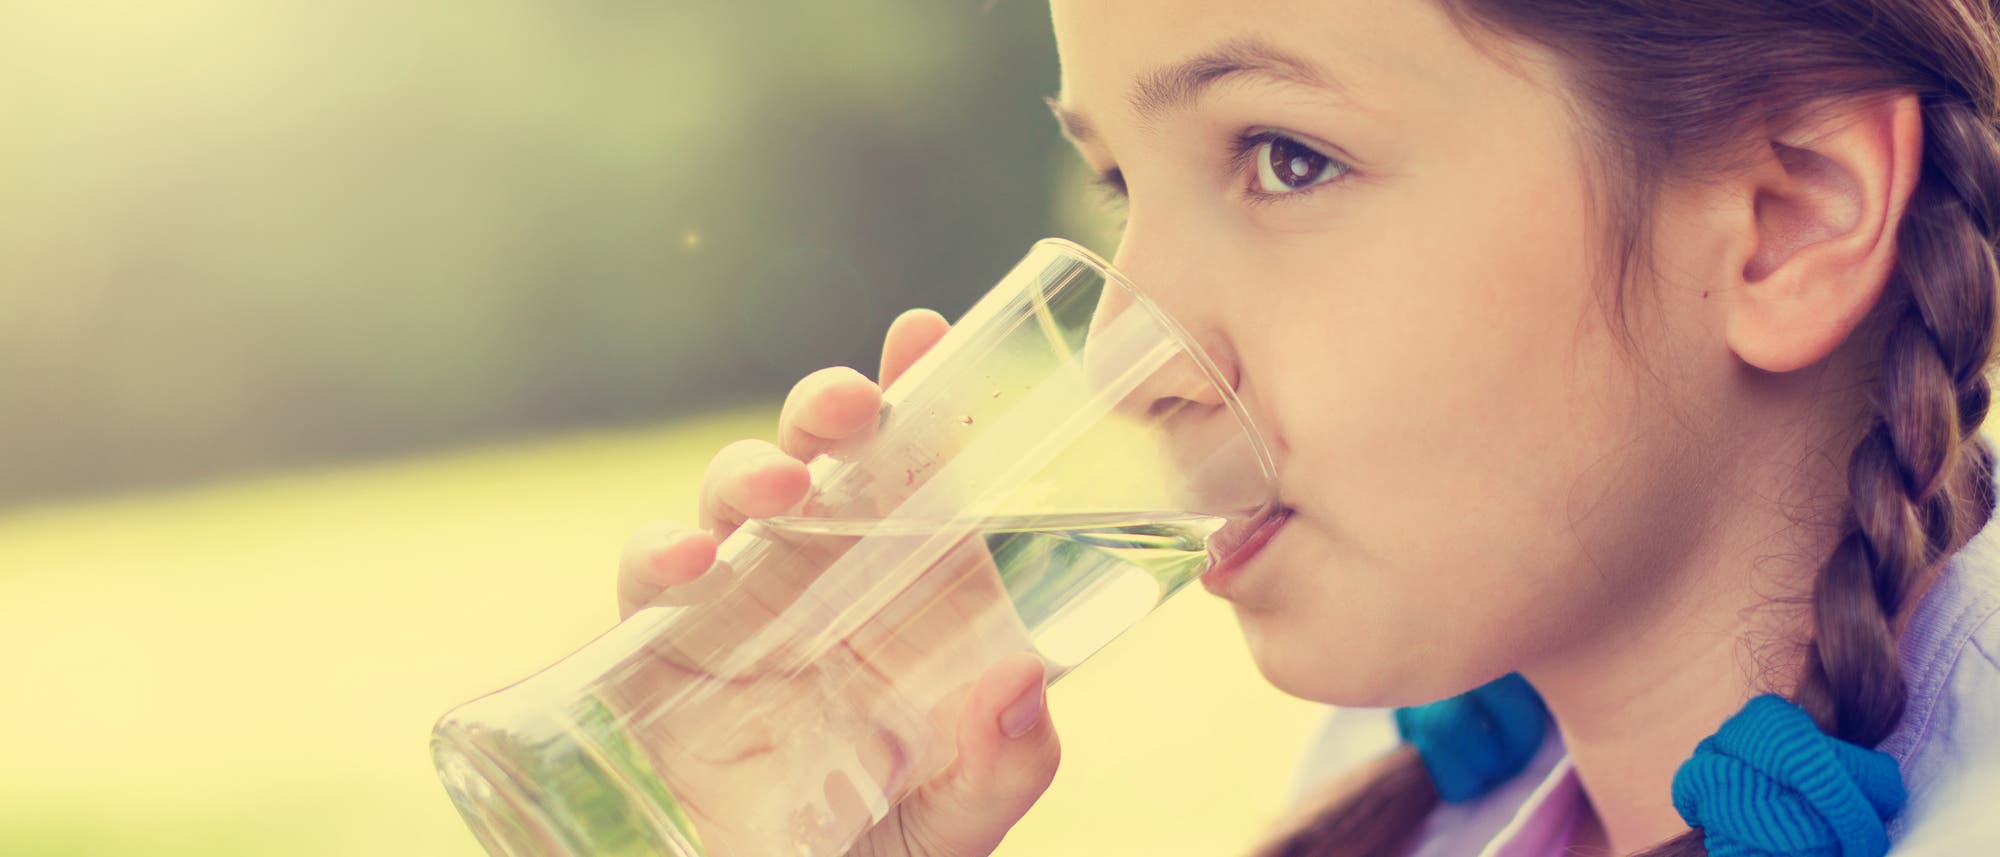 Ein Mädchen löscht seinen Durst mit einem Glas Wasser